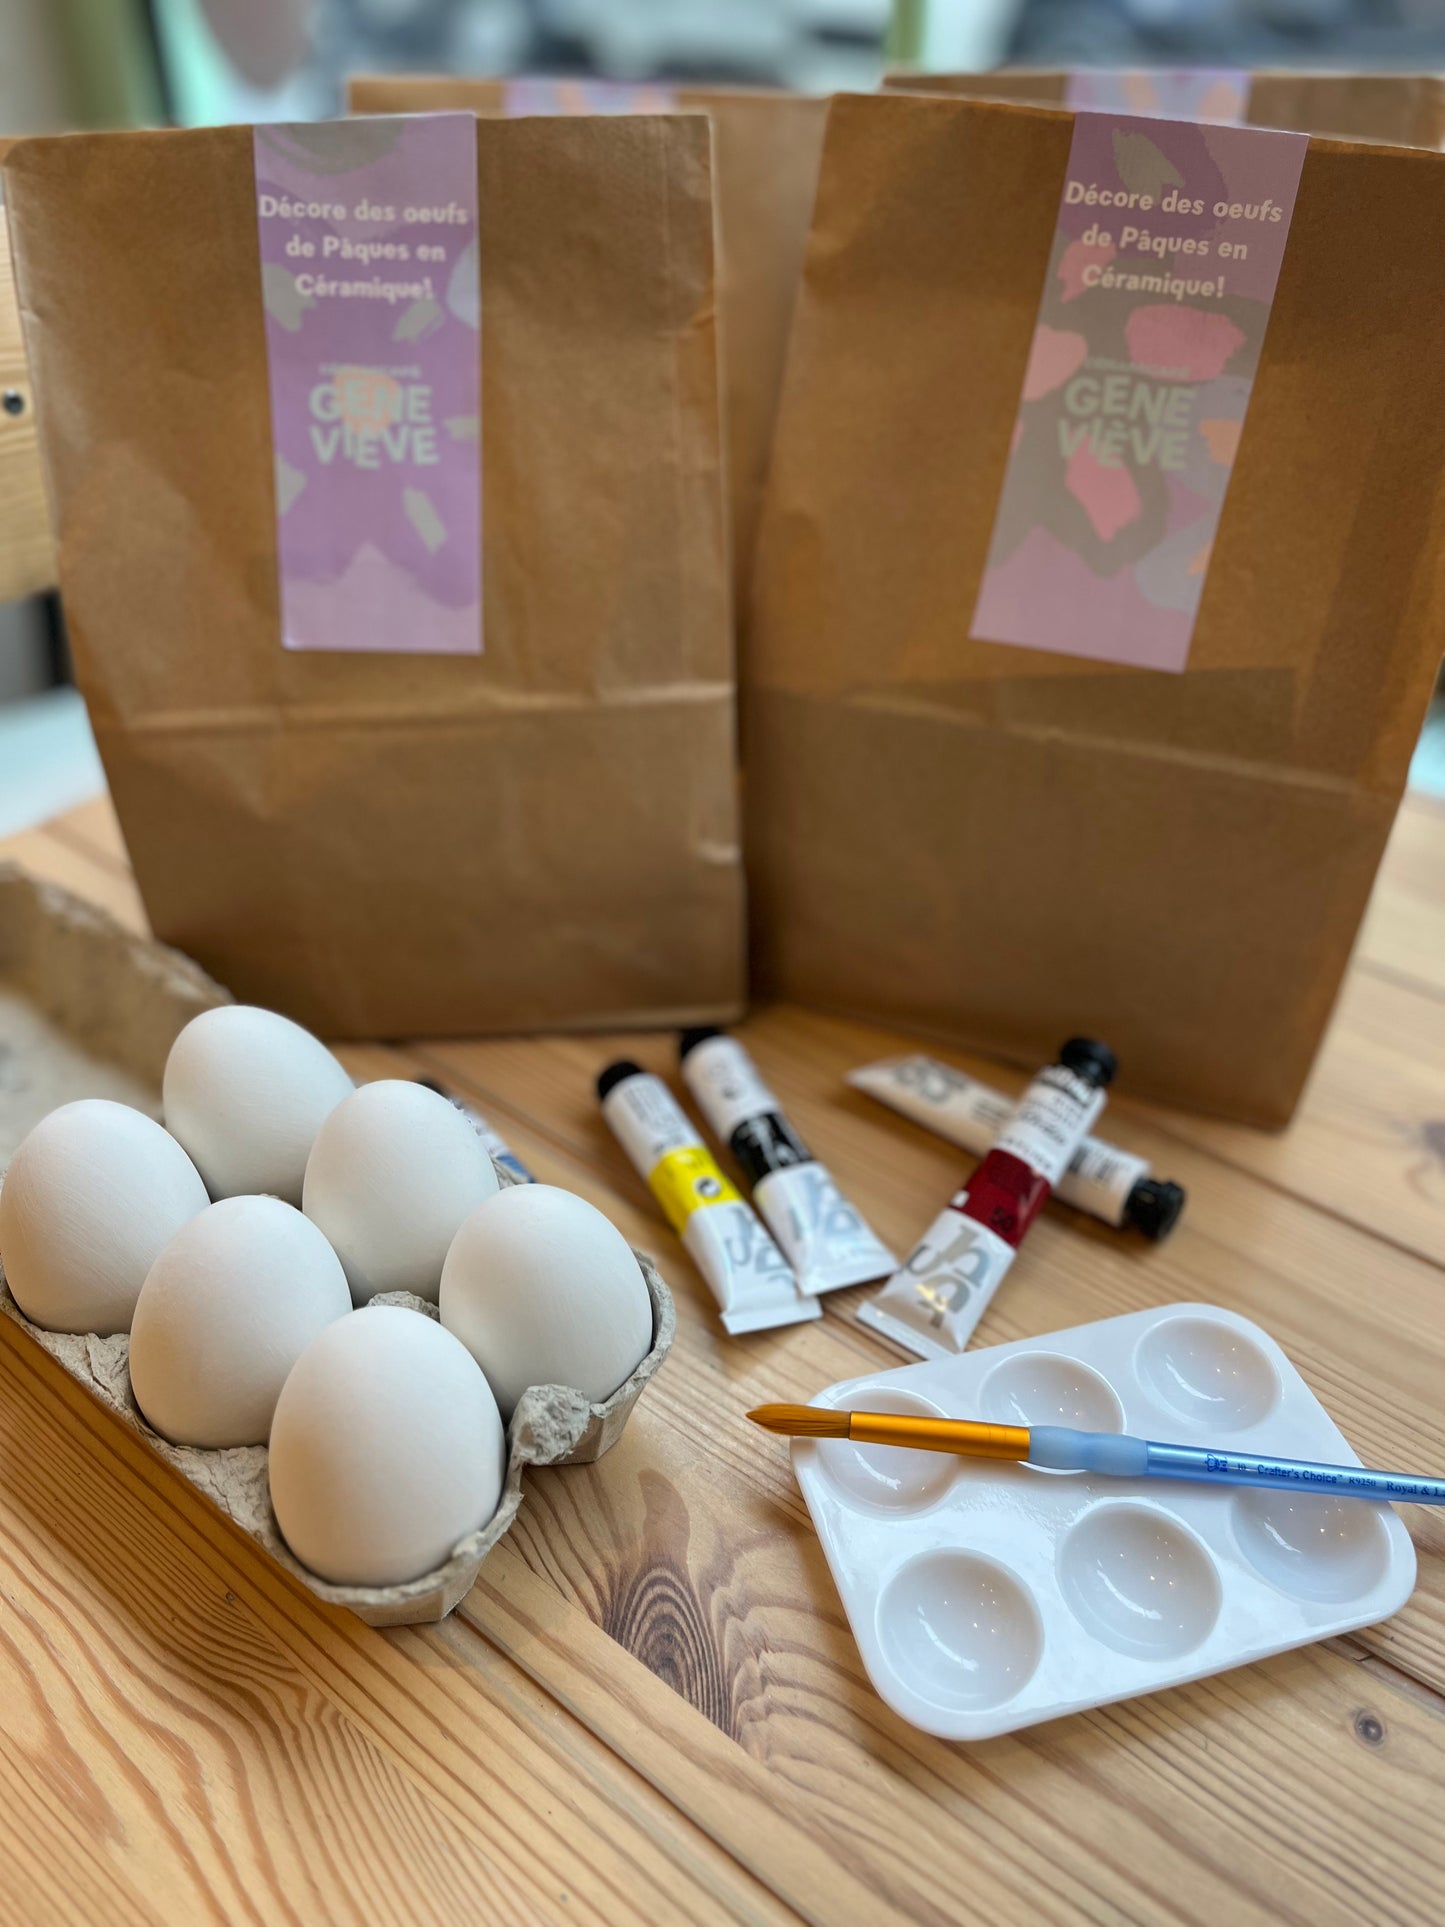 Box Peinture sur céramique - Décorer tes oeufs de Pâques ! (avec cuisson)